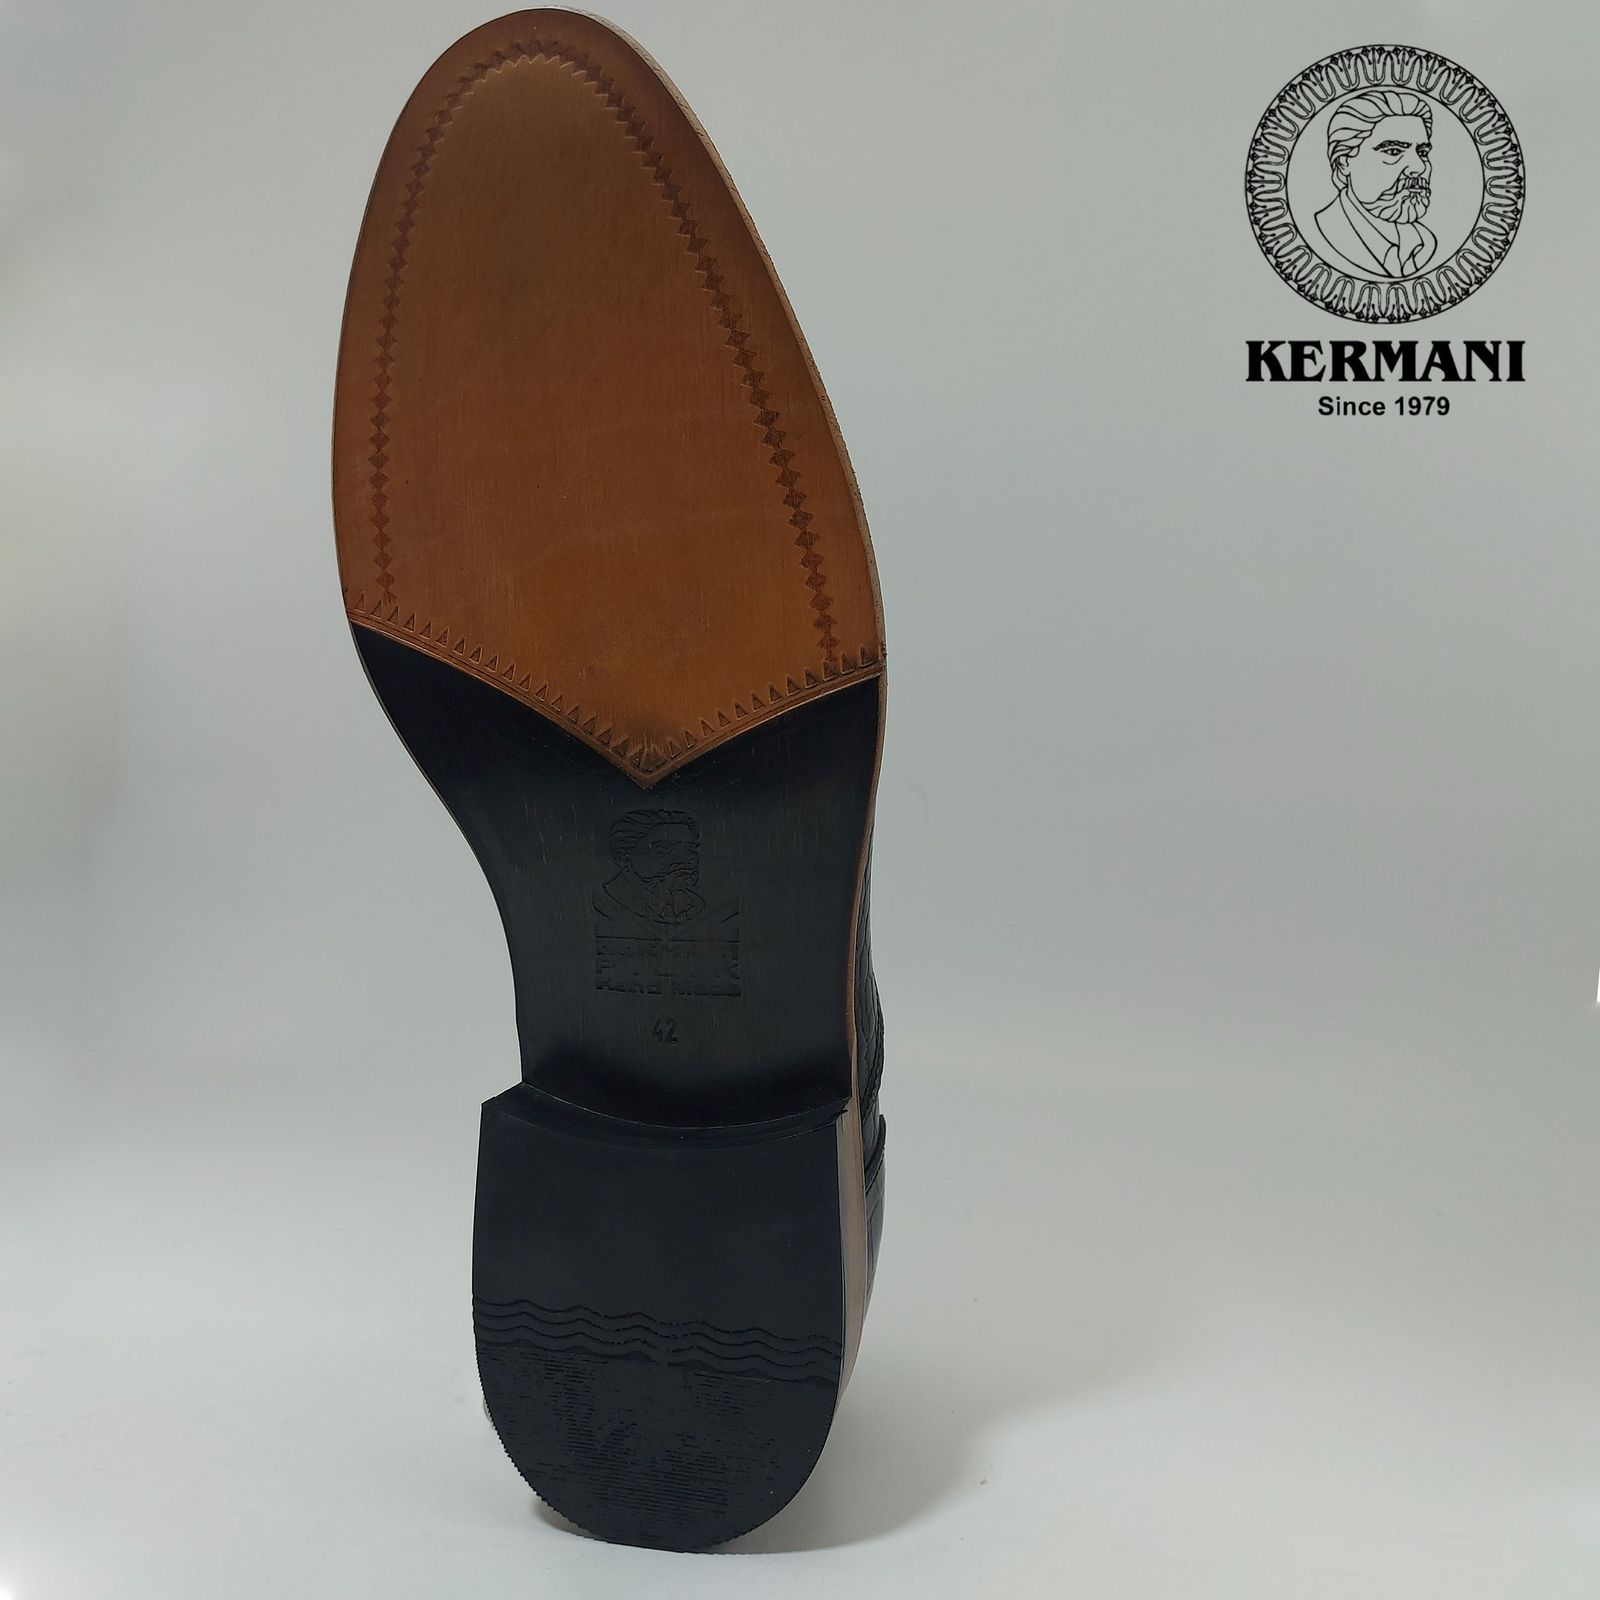 کفش مردانه کرمانی مدل تمام چرم طبیعی کروکو دستدوز کد 350 رنگ مشکی -  - 4